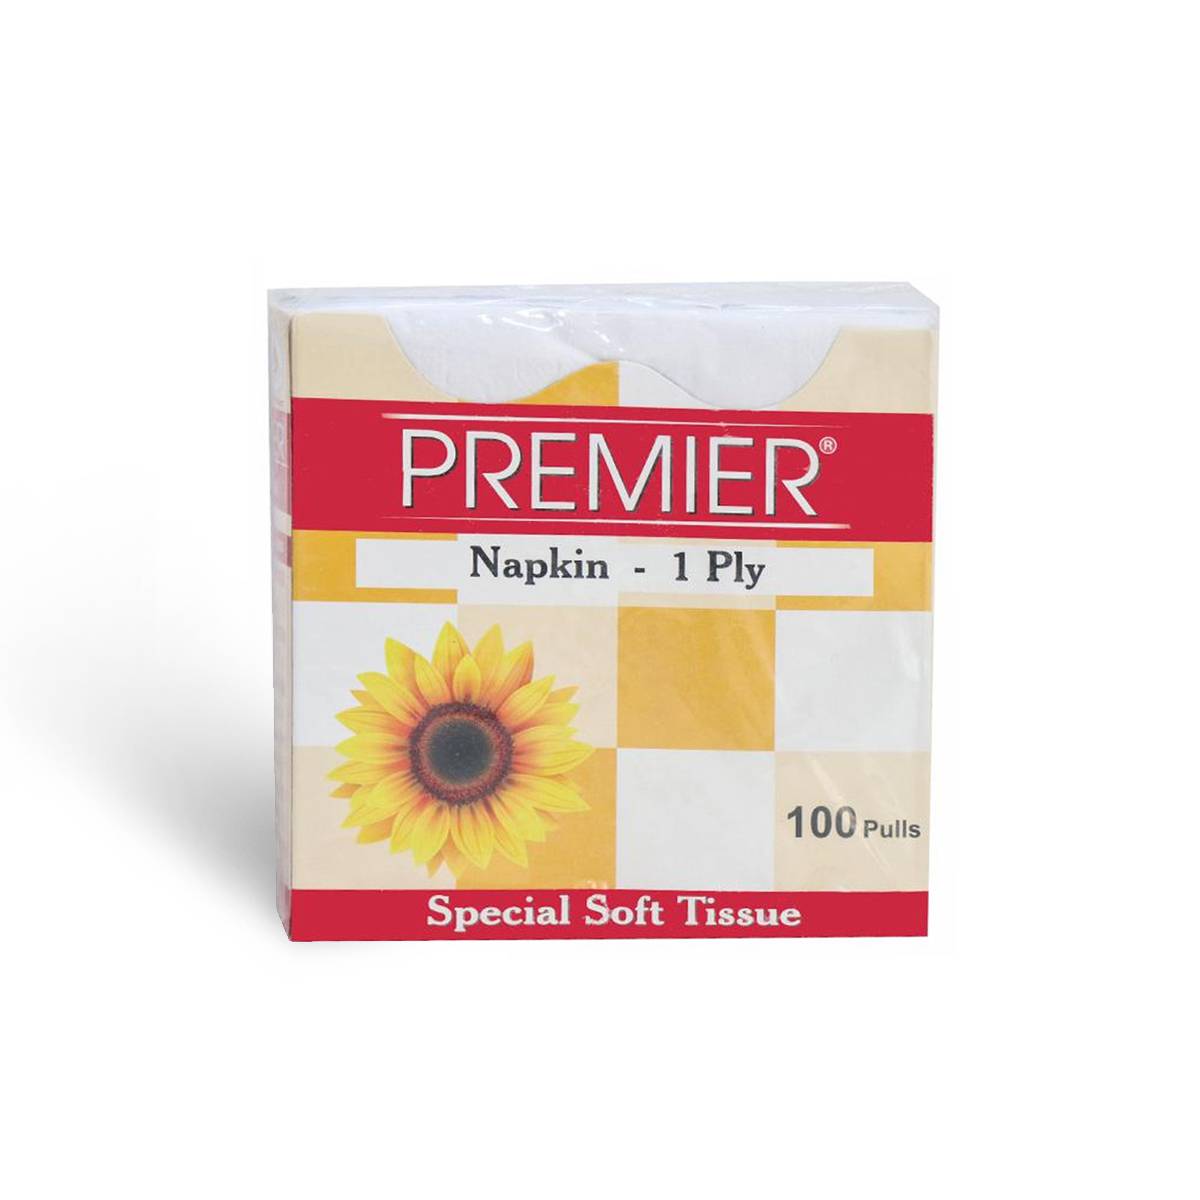 Premier Napkin Soft Tissue - 1 Ply, 100 Pulls